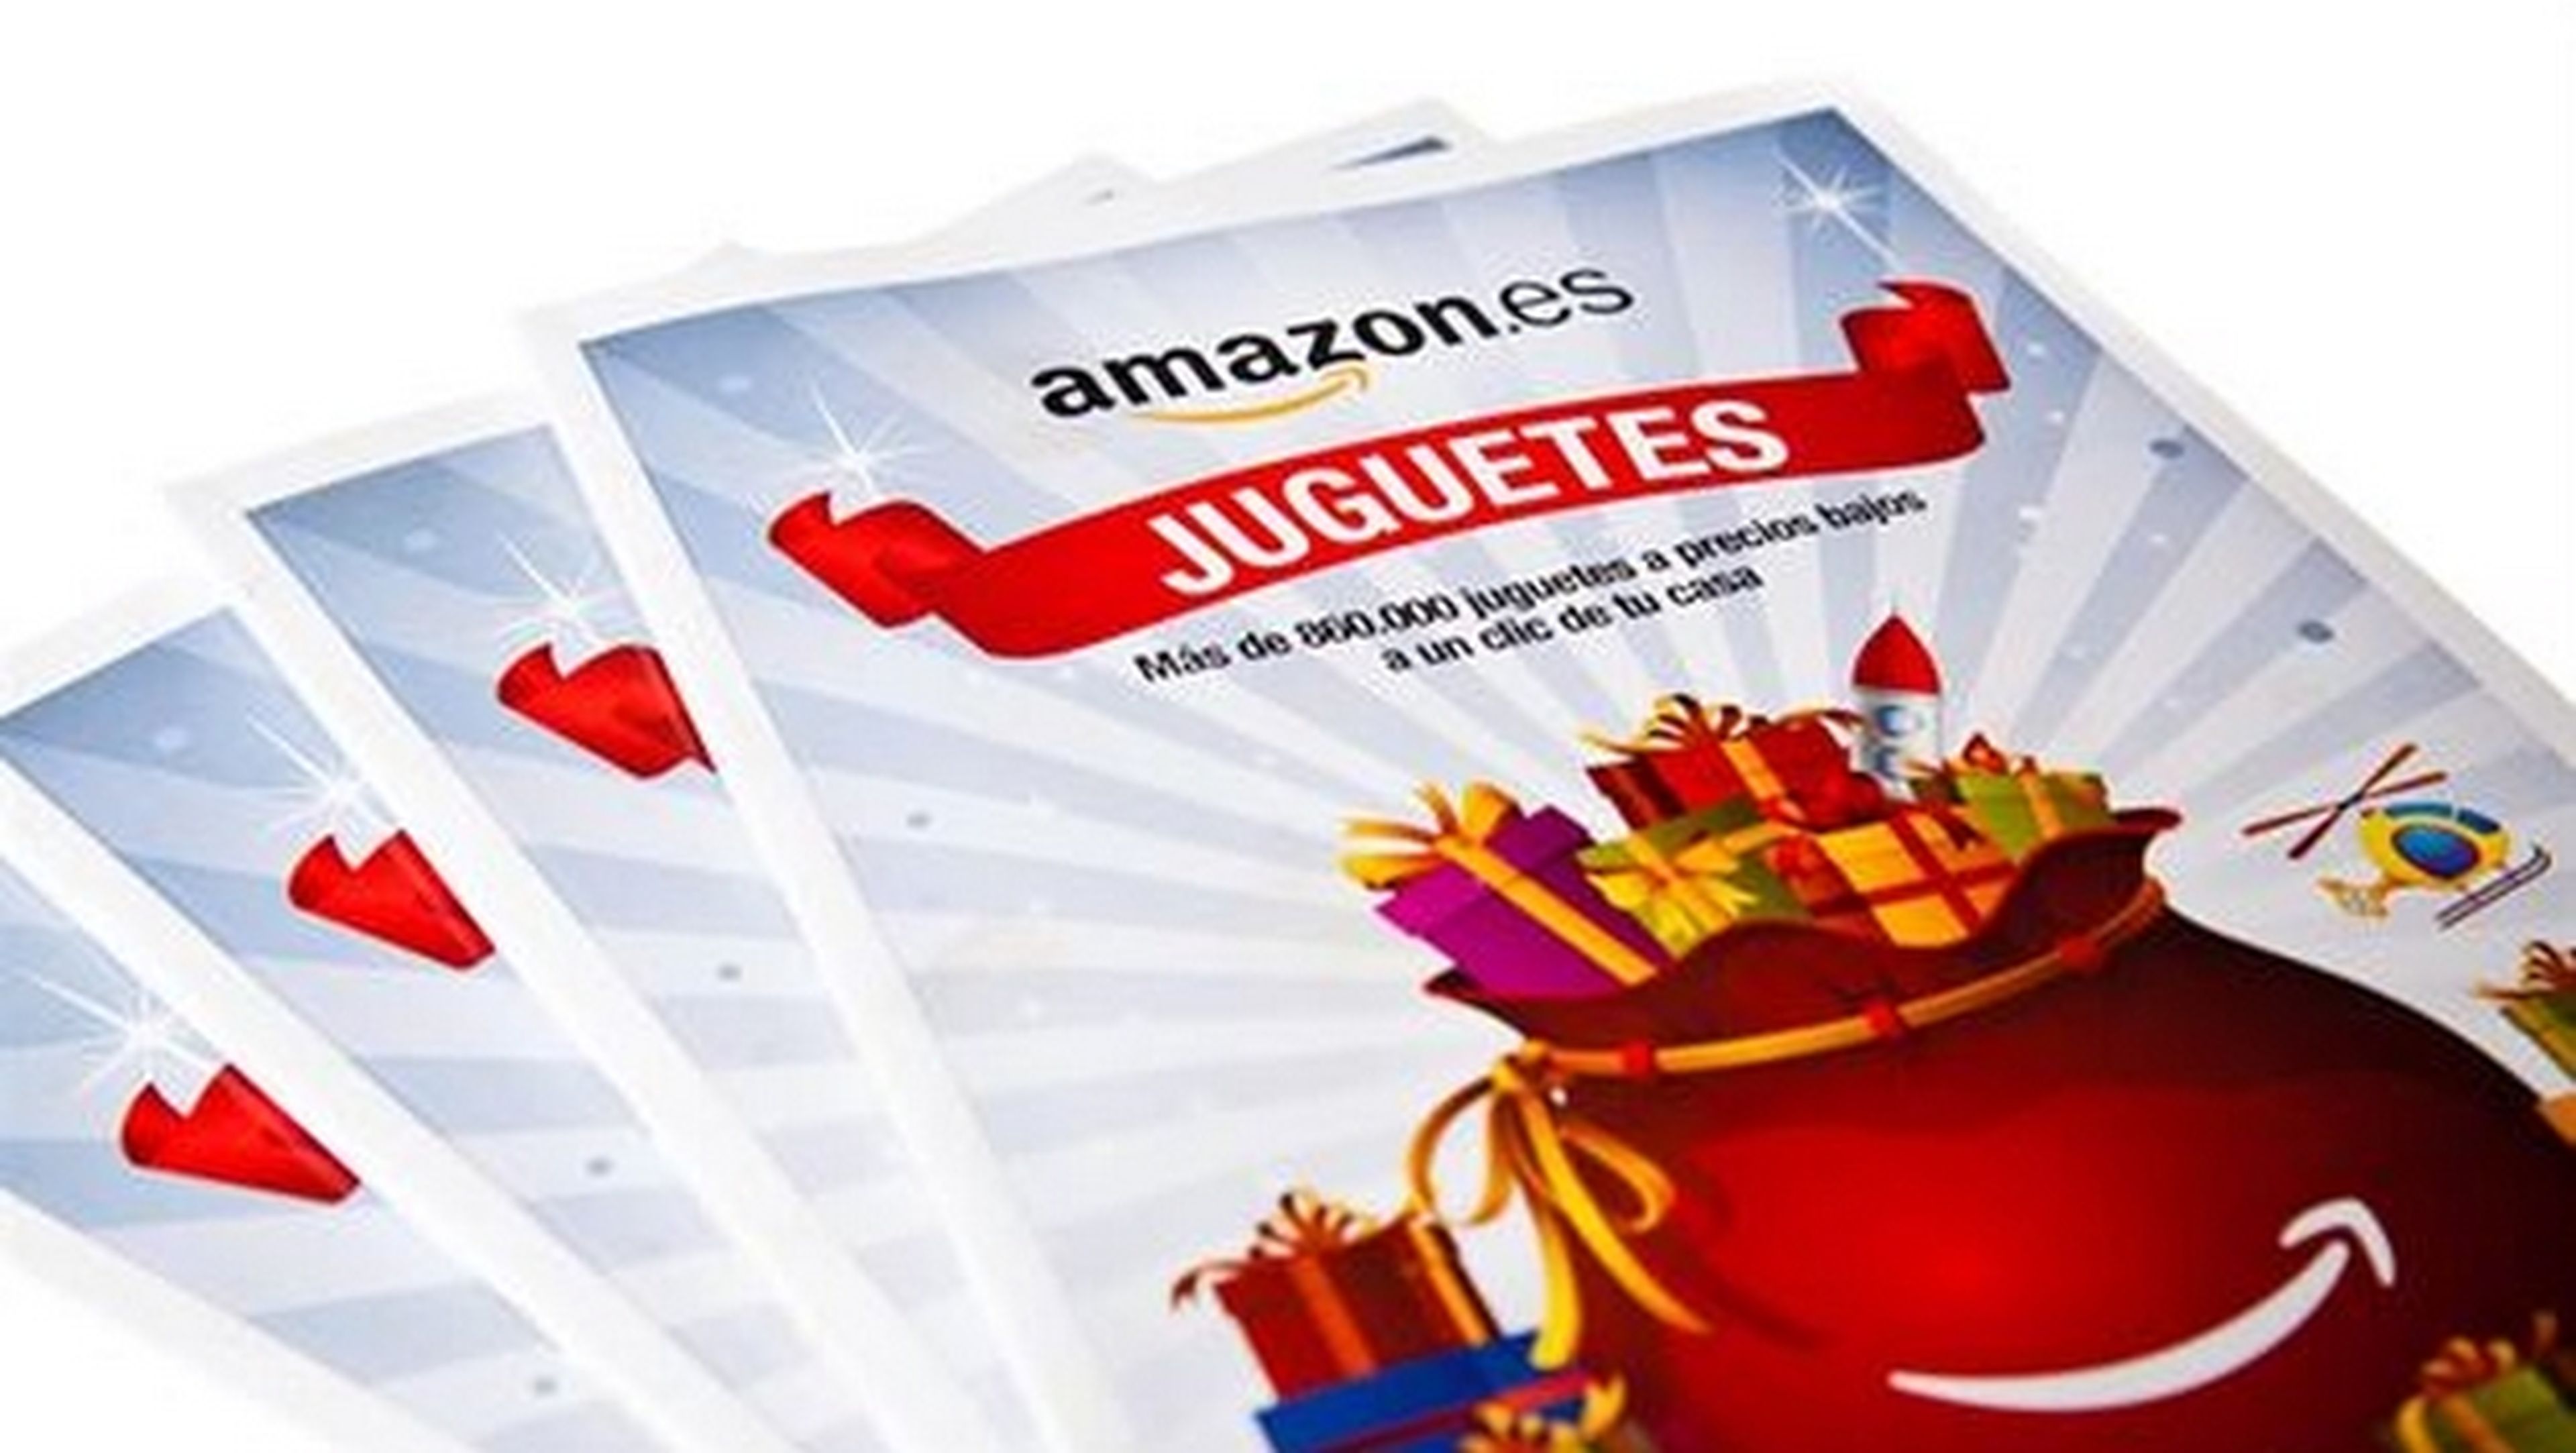 Amazon.es distribuye su primer catálogo de juguetes en papel, para captar nuevos clientes en Navidad 2014.